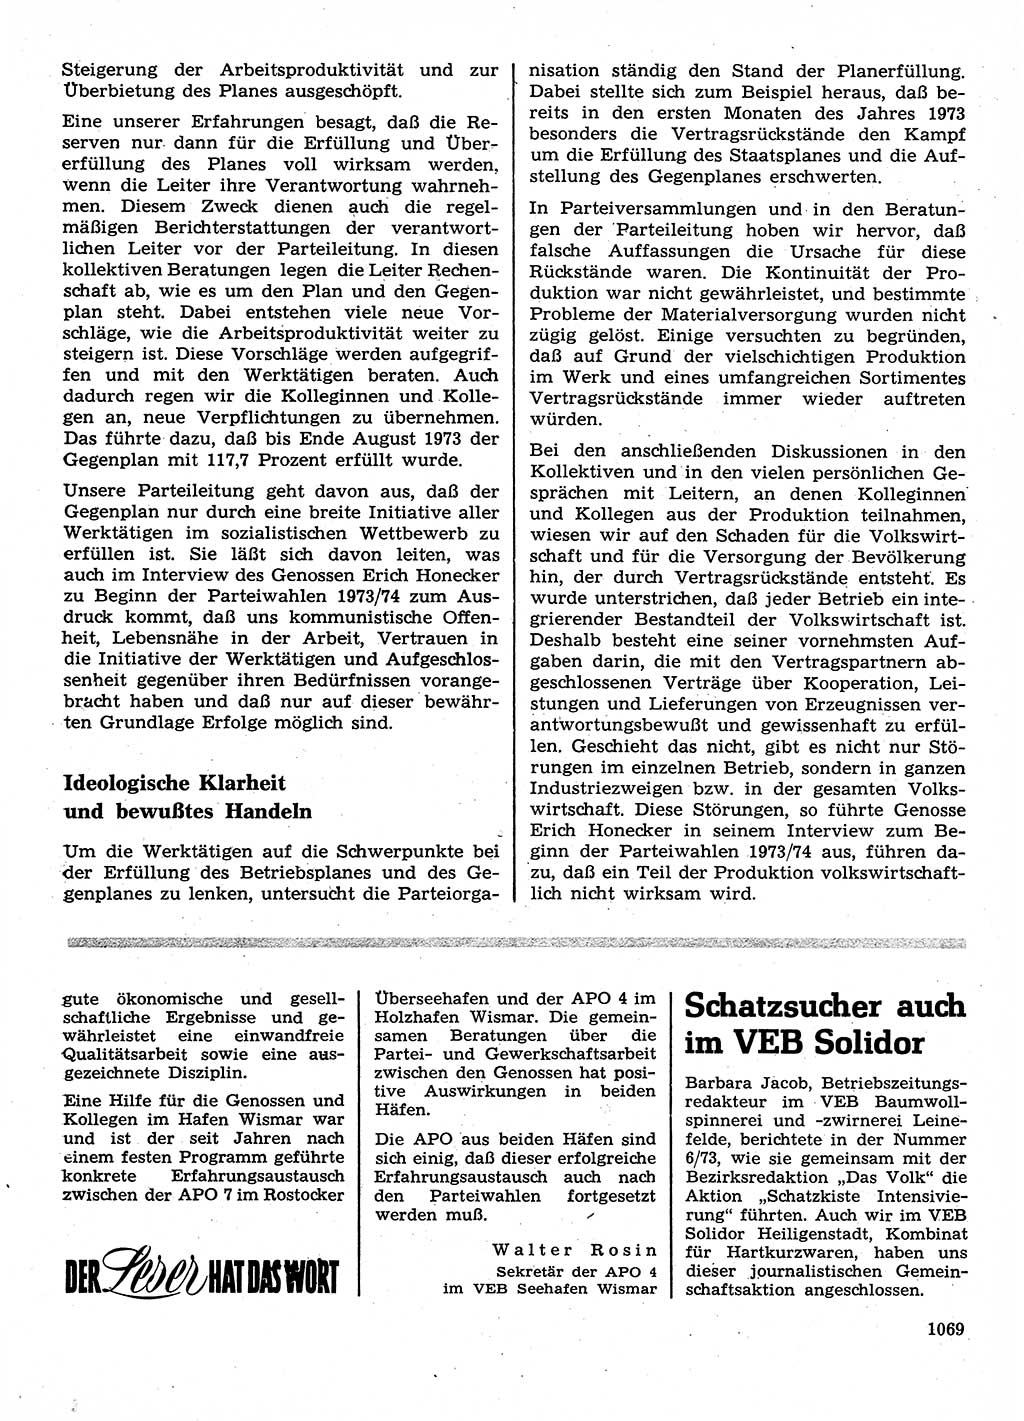 Neuer Weg (NW), Organ des Zentralkomitees (ZK) der SED (Sozialistische Einheitspartei Deutschlands) für Fragen des Parteilebens, 28. Jahrgang [Deutsche Demokratische Republik (DDR)] 1973, Seite 1069 (NW ZK SED DDR 1973, S. 1069)